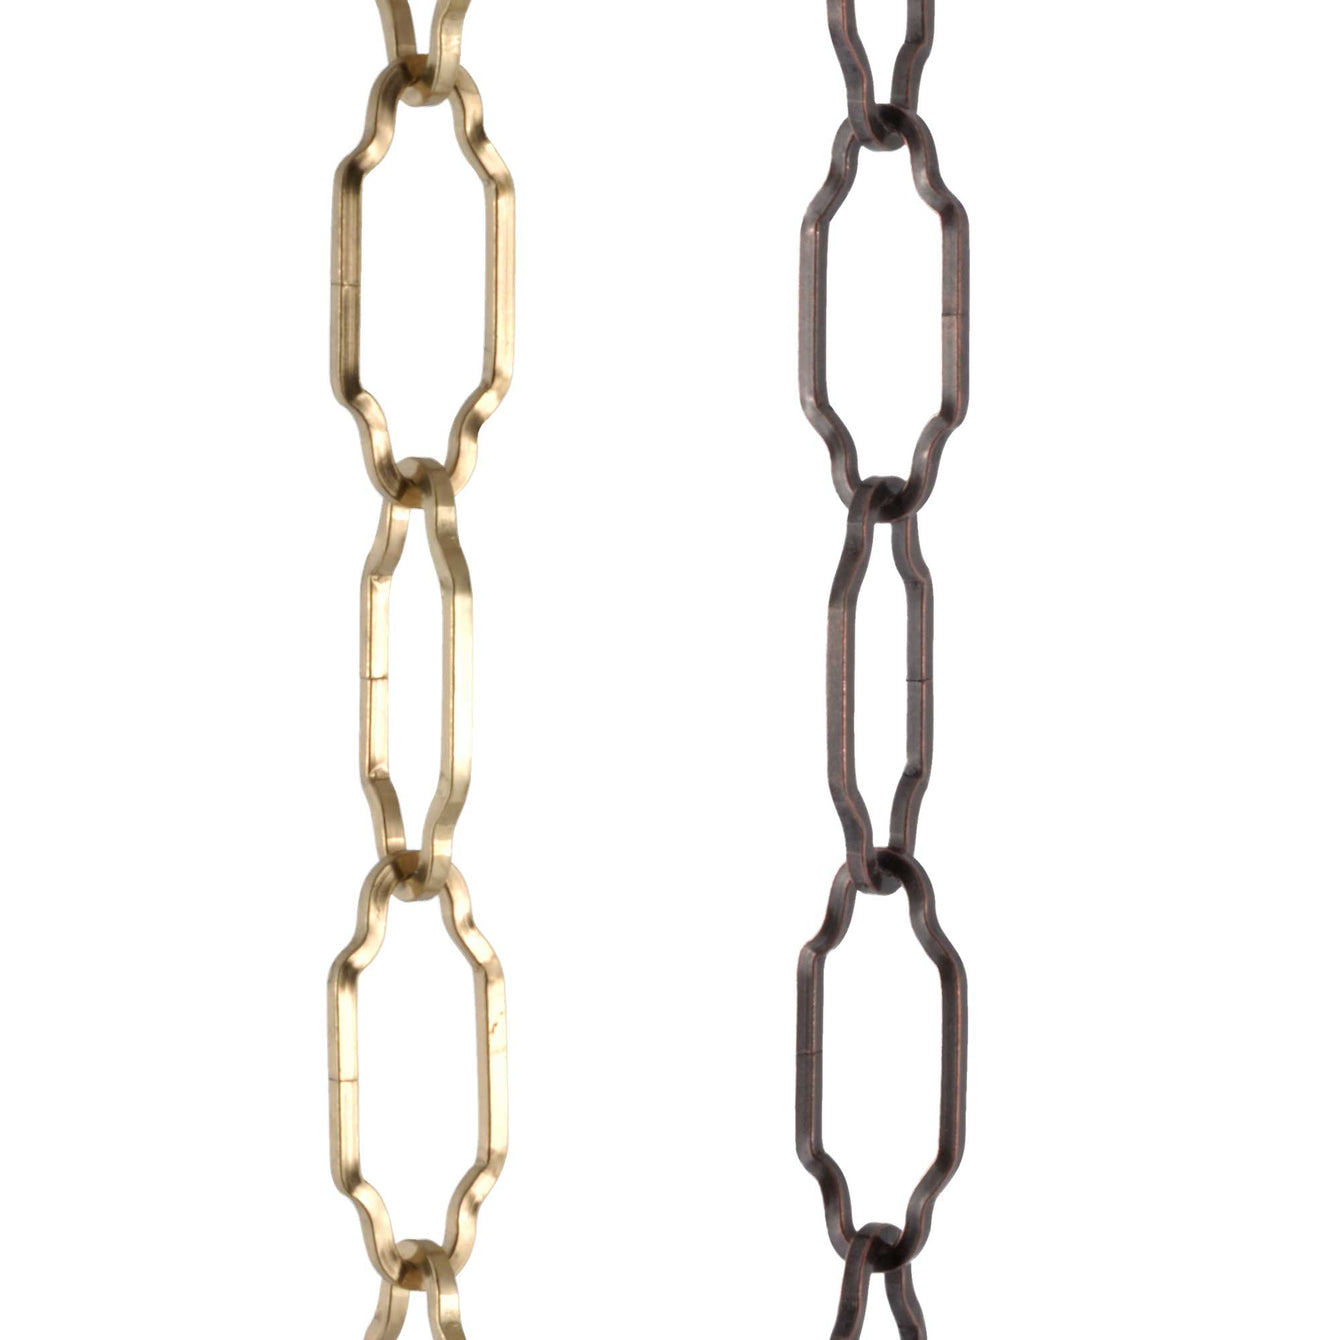 ElekTek Gothic Open Link Chain for Chandelier & Lighting 45mm x 19mm Per Linear Metre - Buy It Better Brass